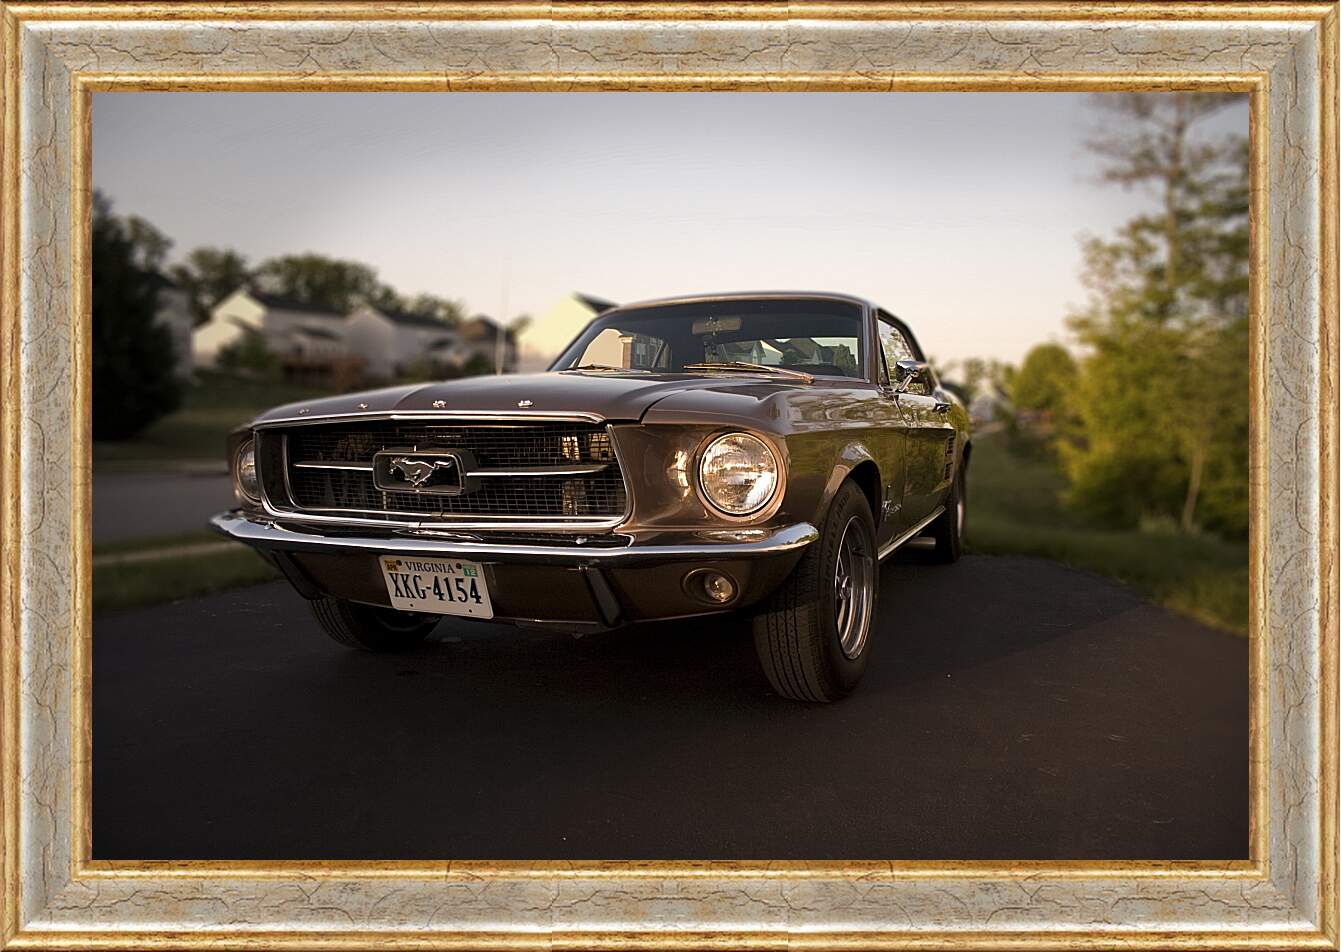 Картина в раме - Форд Мустанг (Ford Mustang)